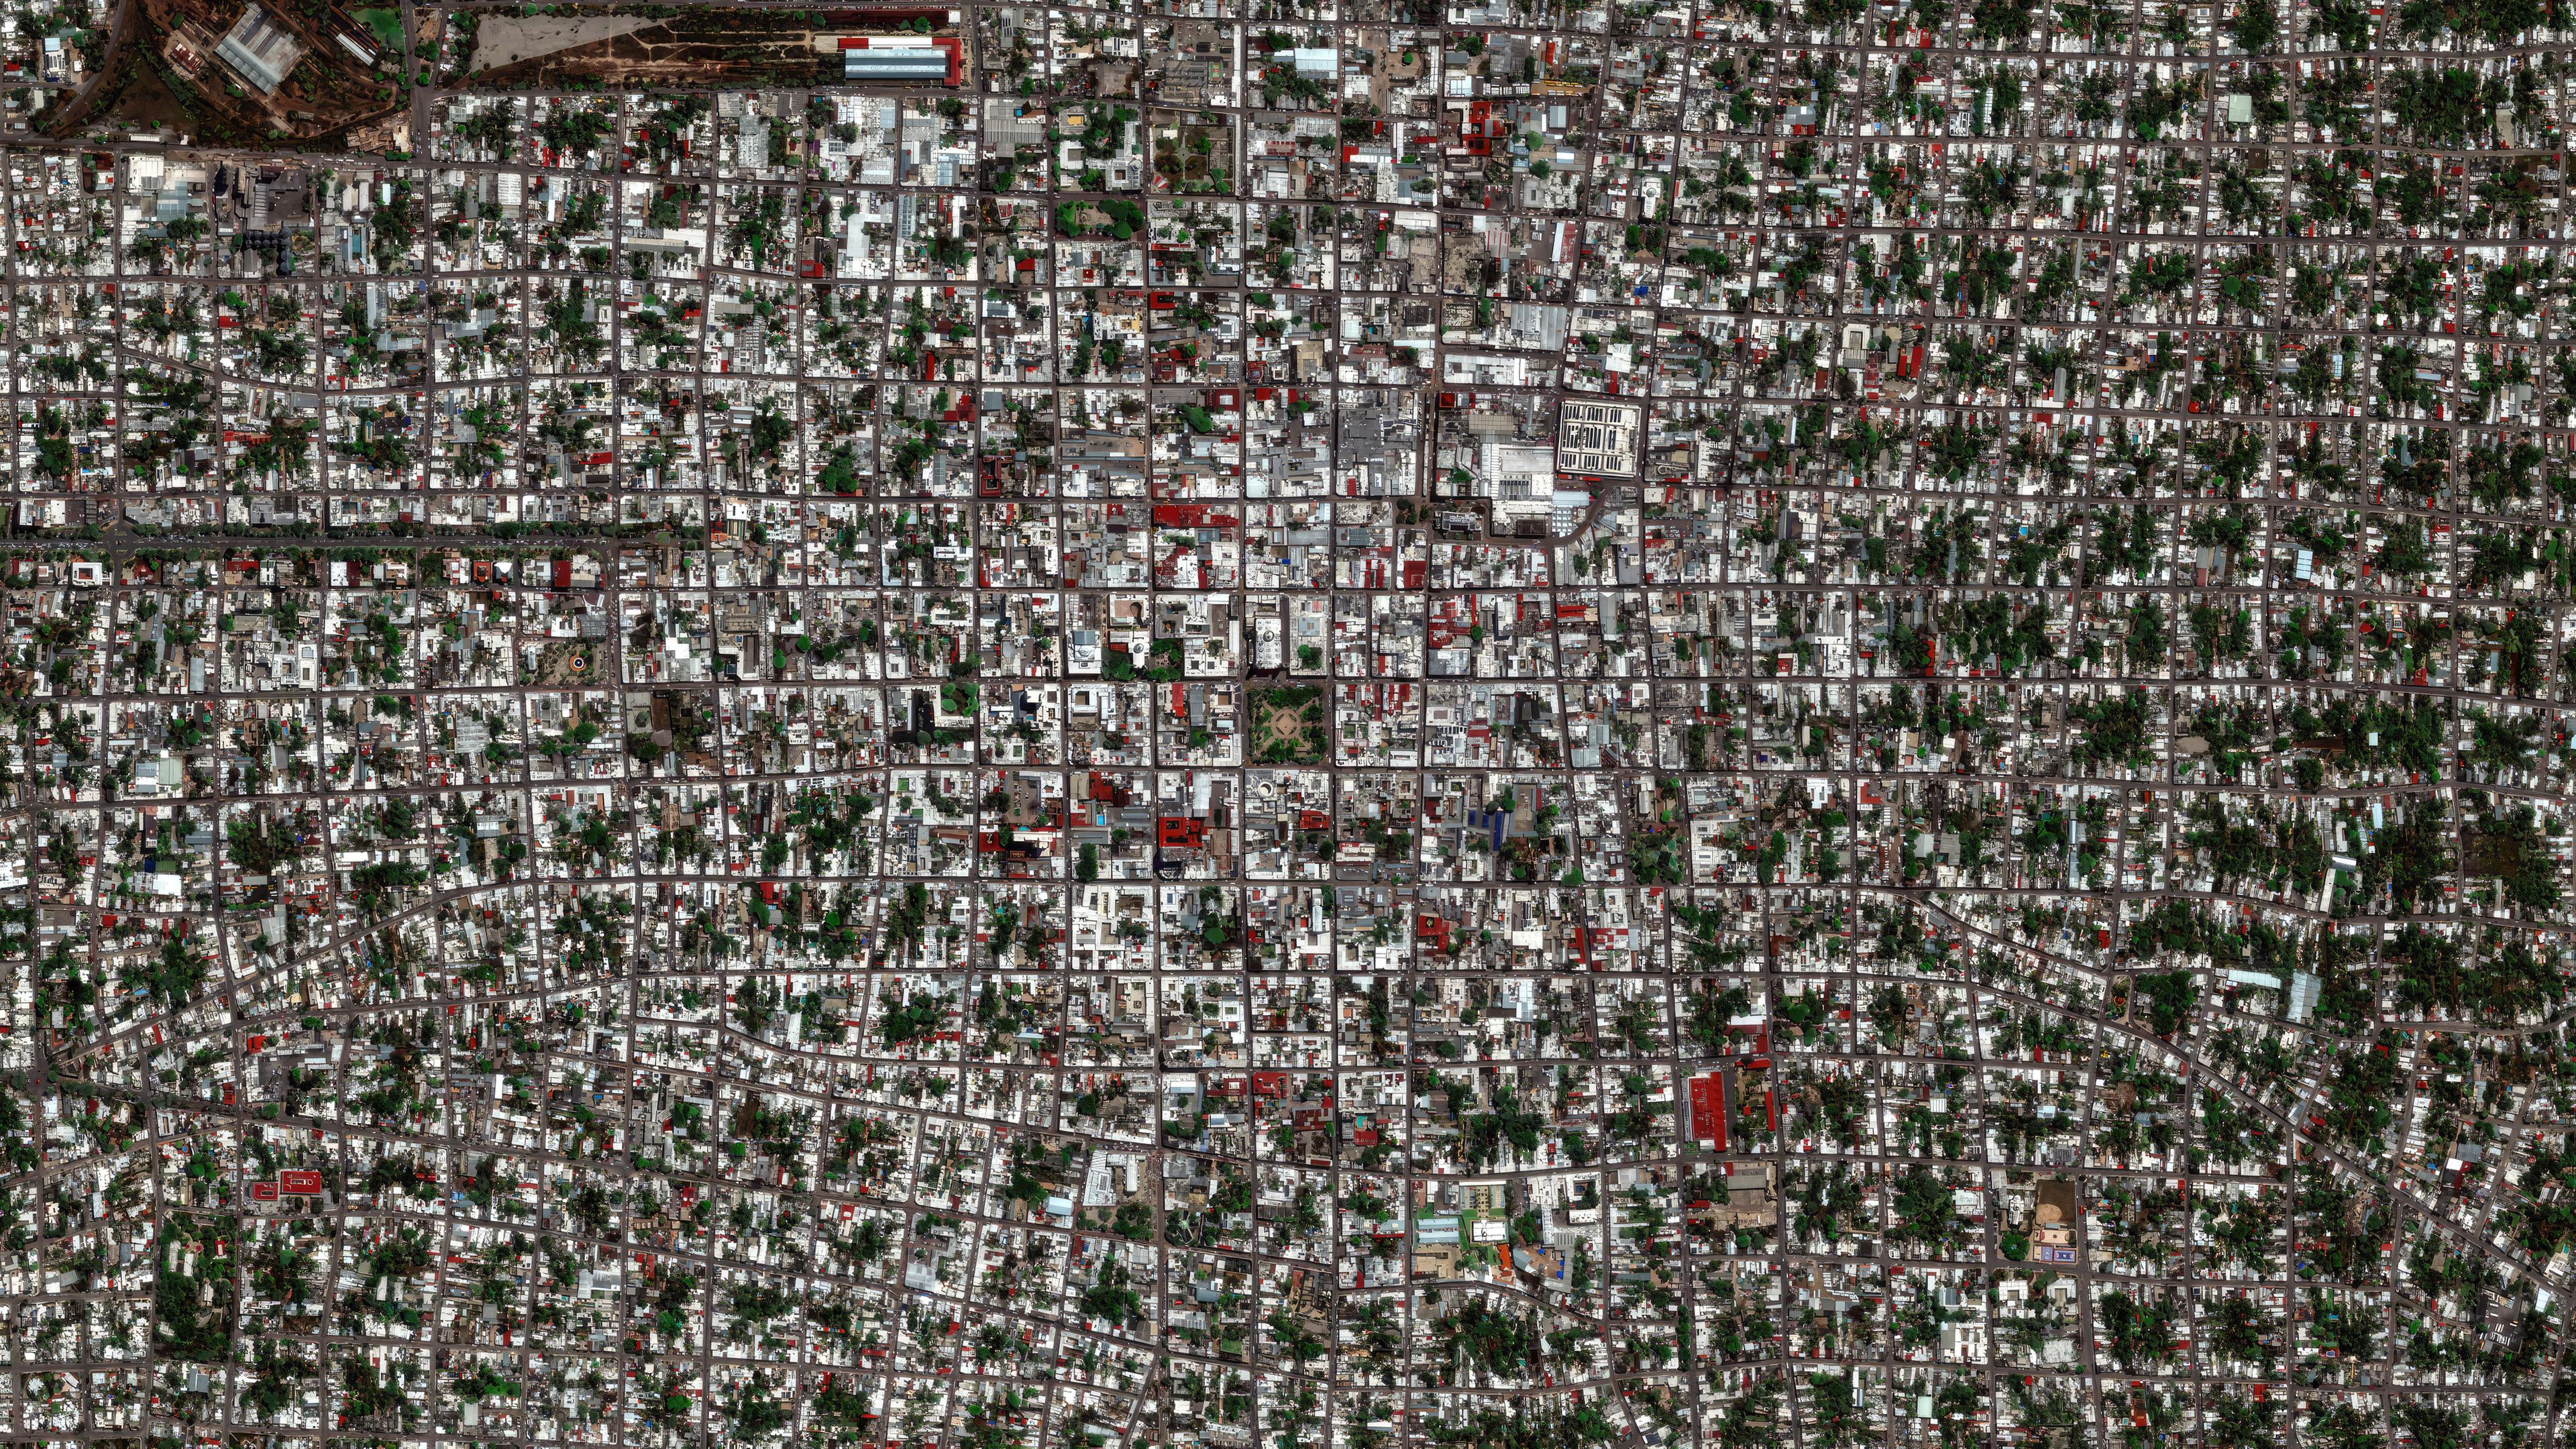 Luftaufnahme einer Großstadt, die durch Straßen und Gebäude in regelmäßige geometrische Formen geteilt ist.